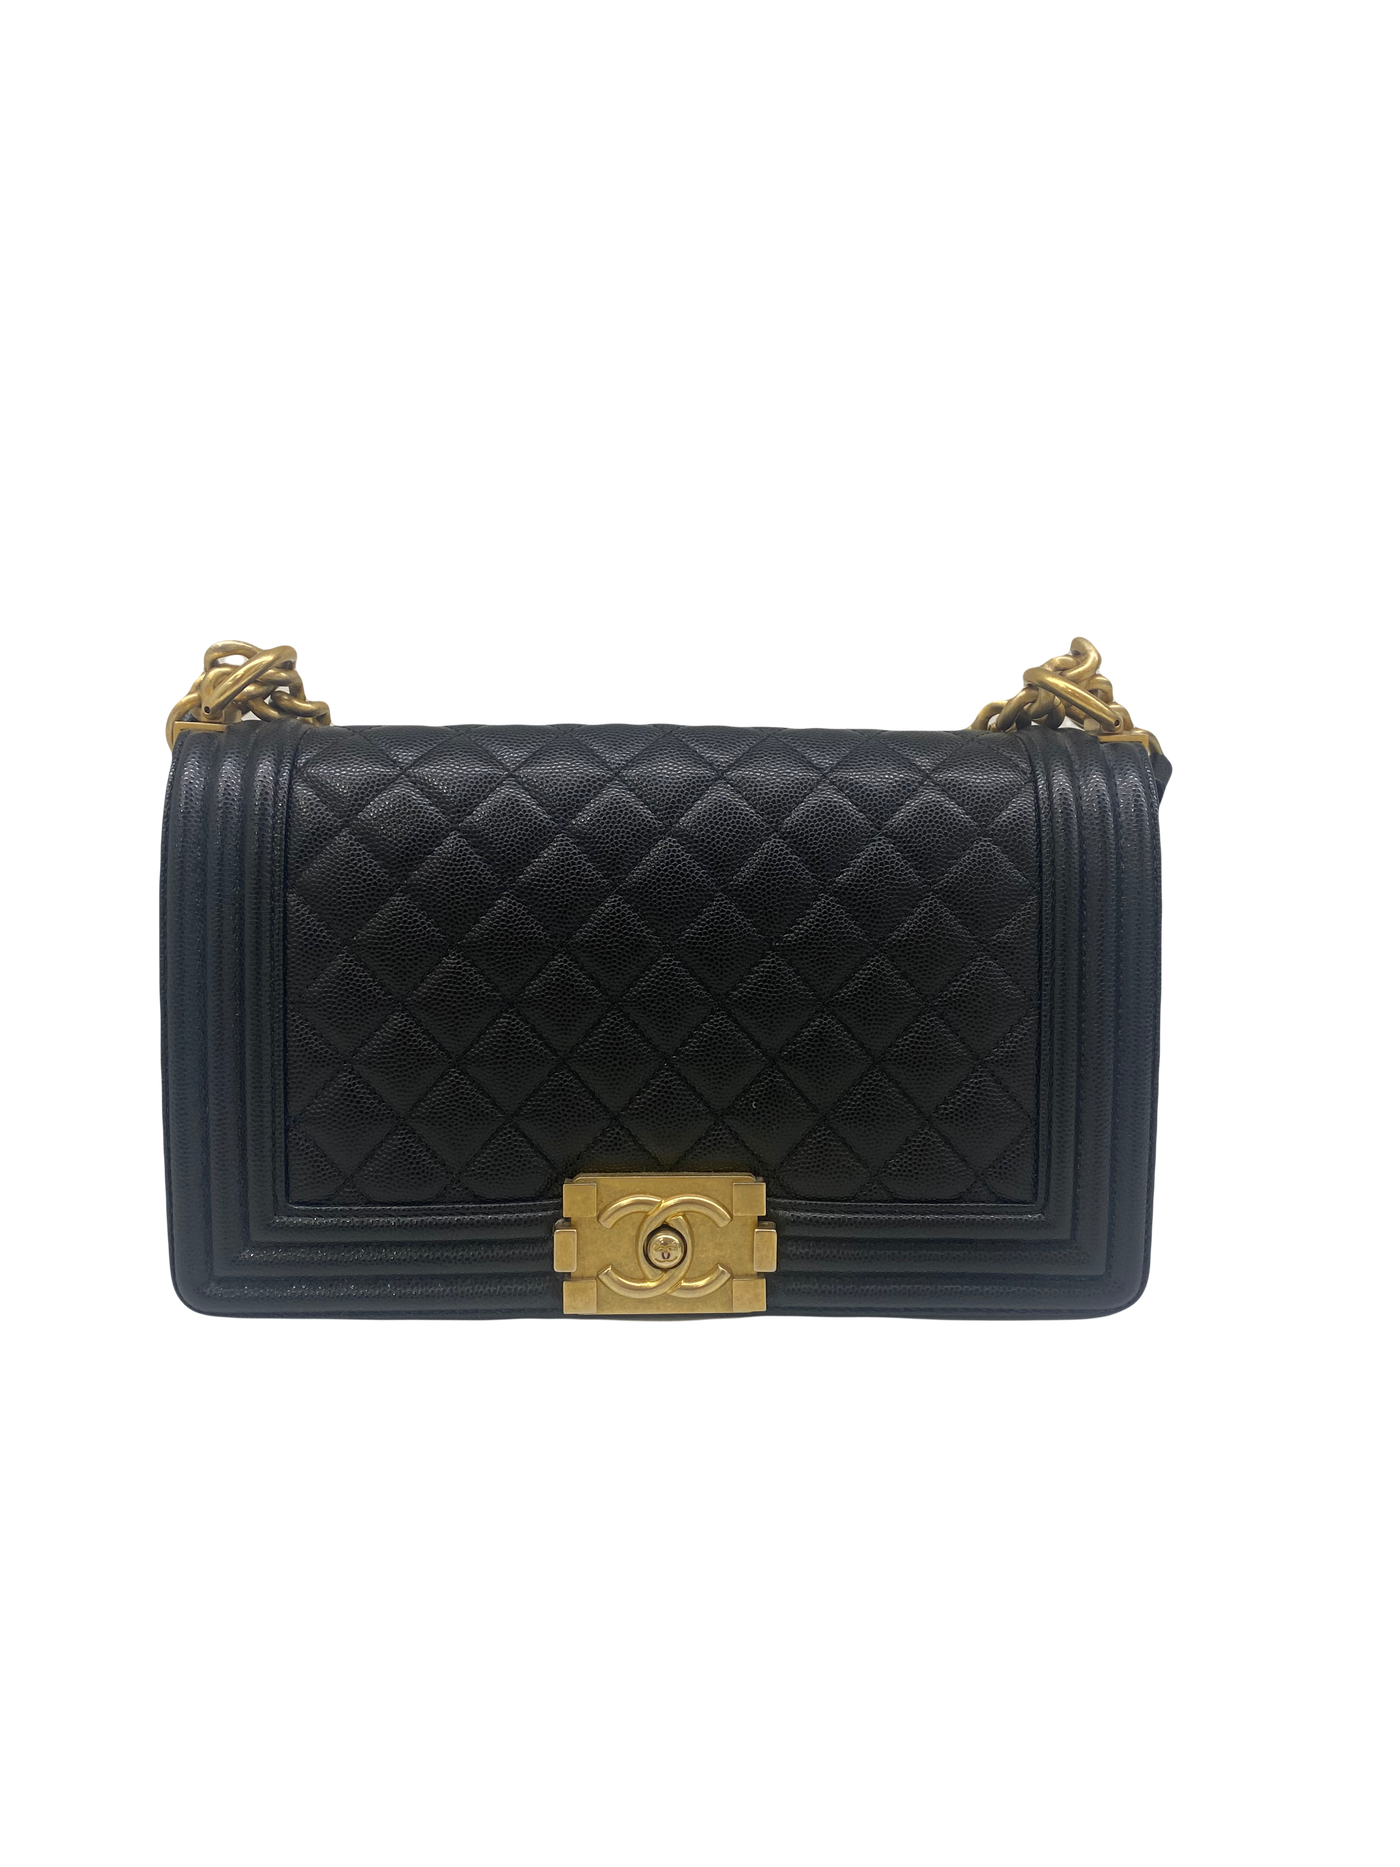 Chanel Boy Bag Medium Black Caviar GHW 29 series